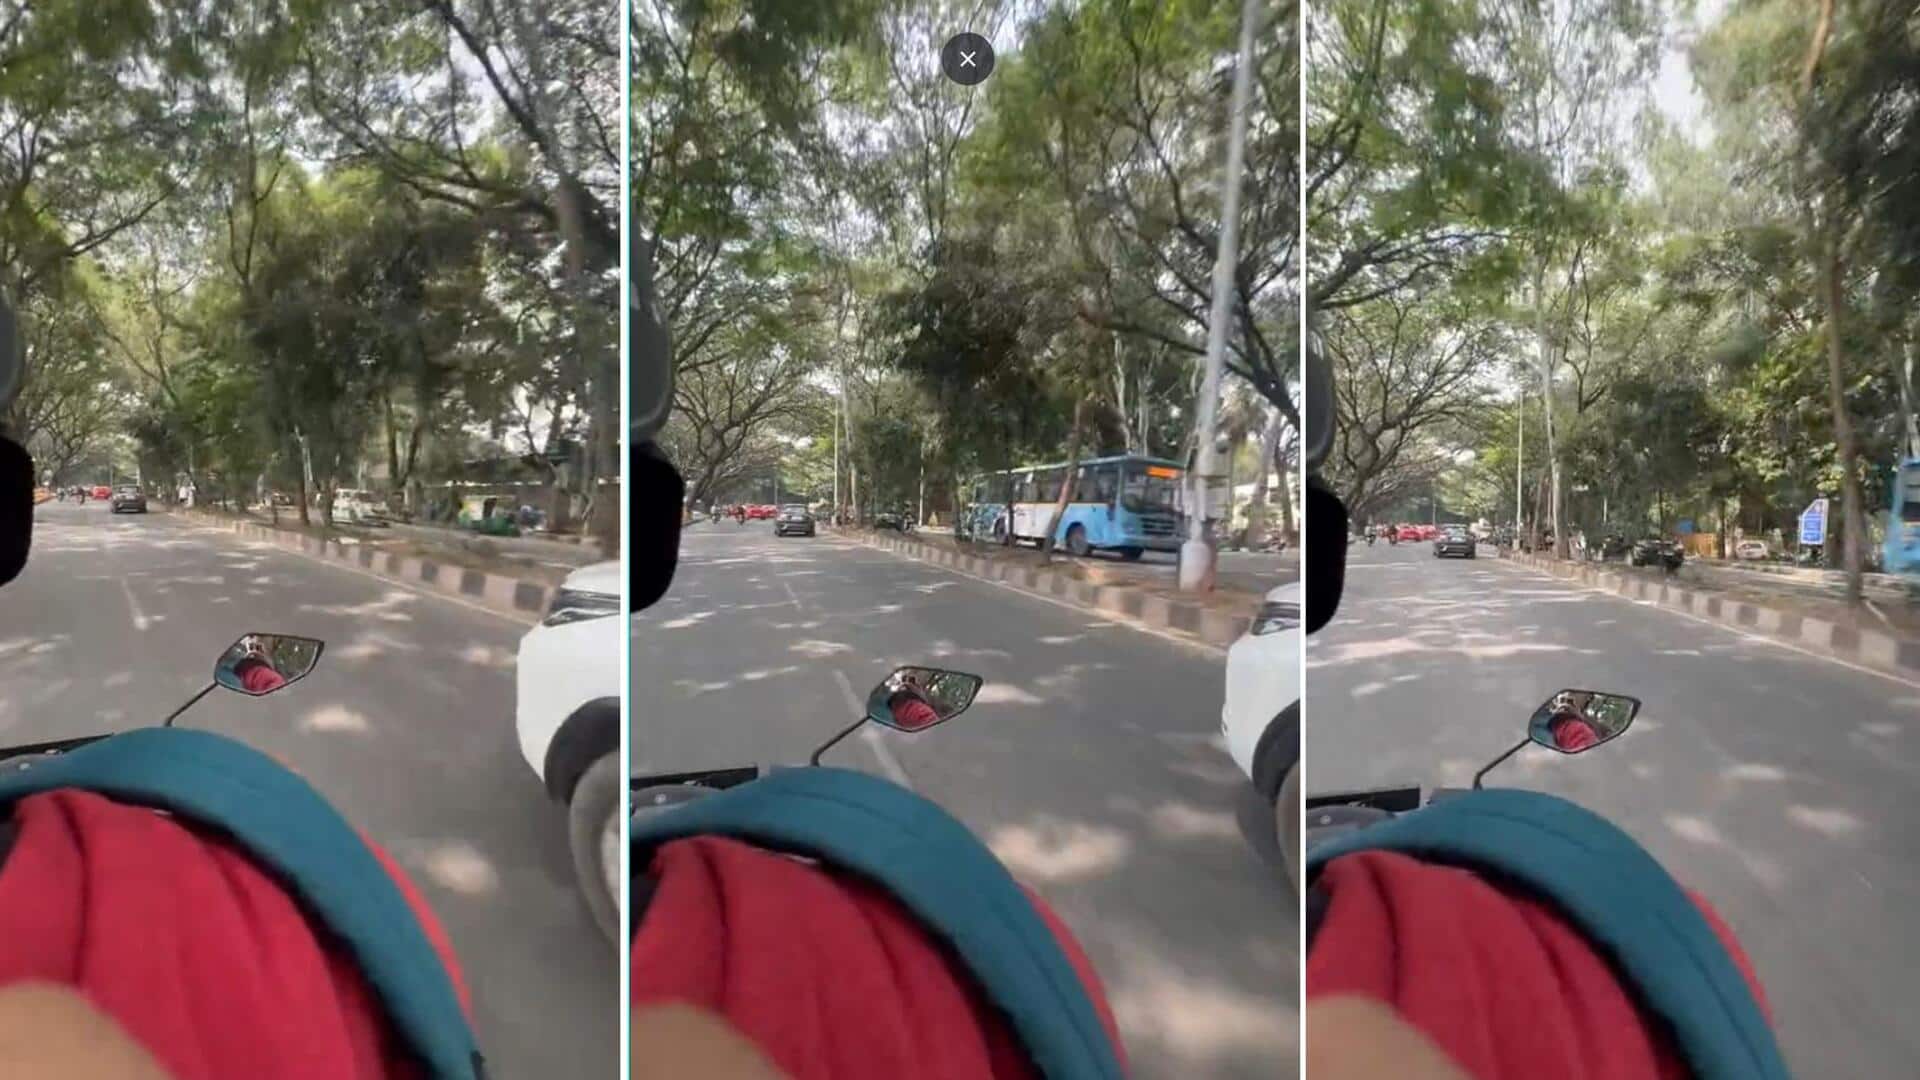 बेंगलुरु: शहर घूमने के लिए गूगल की नौकरी छोड़कर उबर ड्राइवर बना व्यक्ति, देखें वीडियो